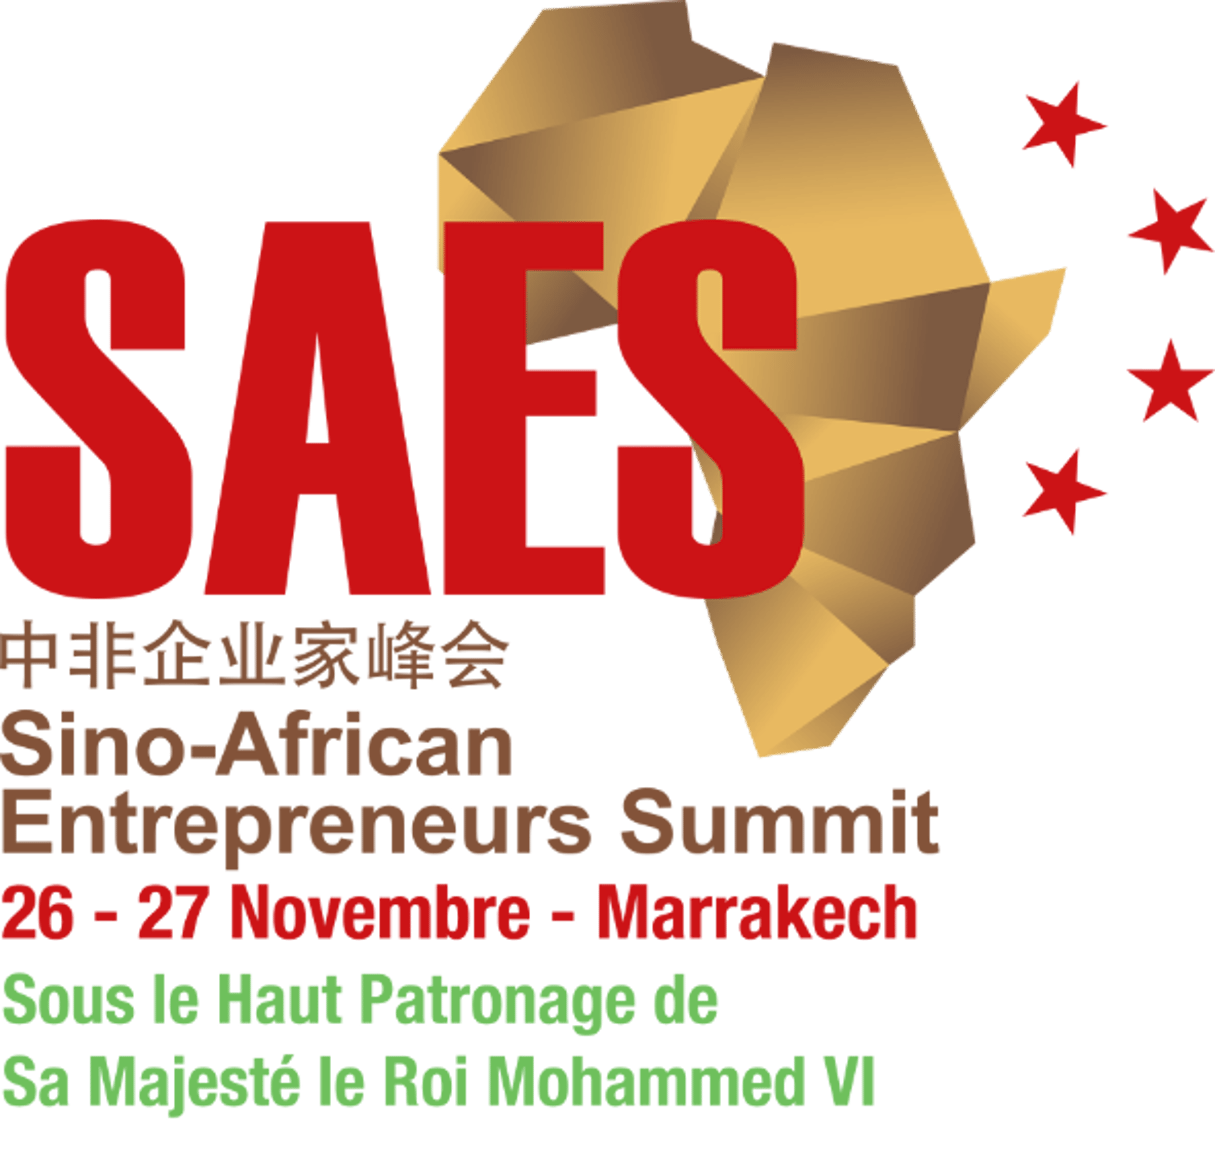 Le Maroc accueille le SAES en 2015 © www.saes.com